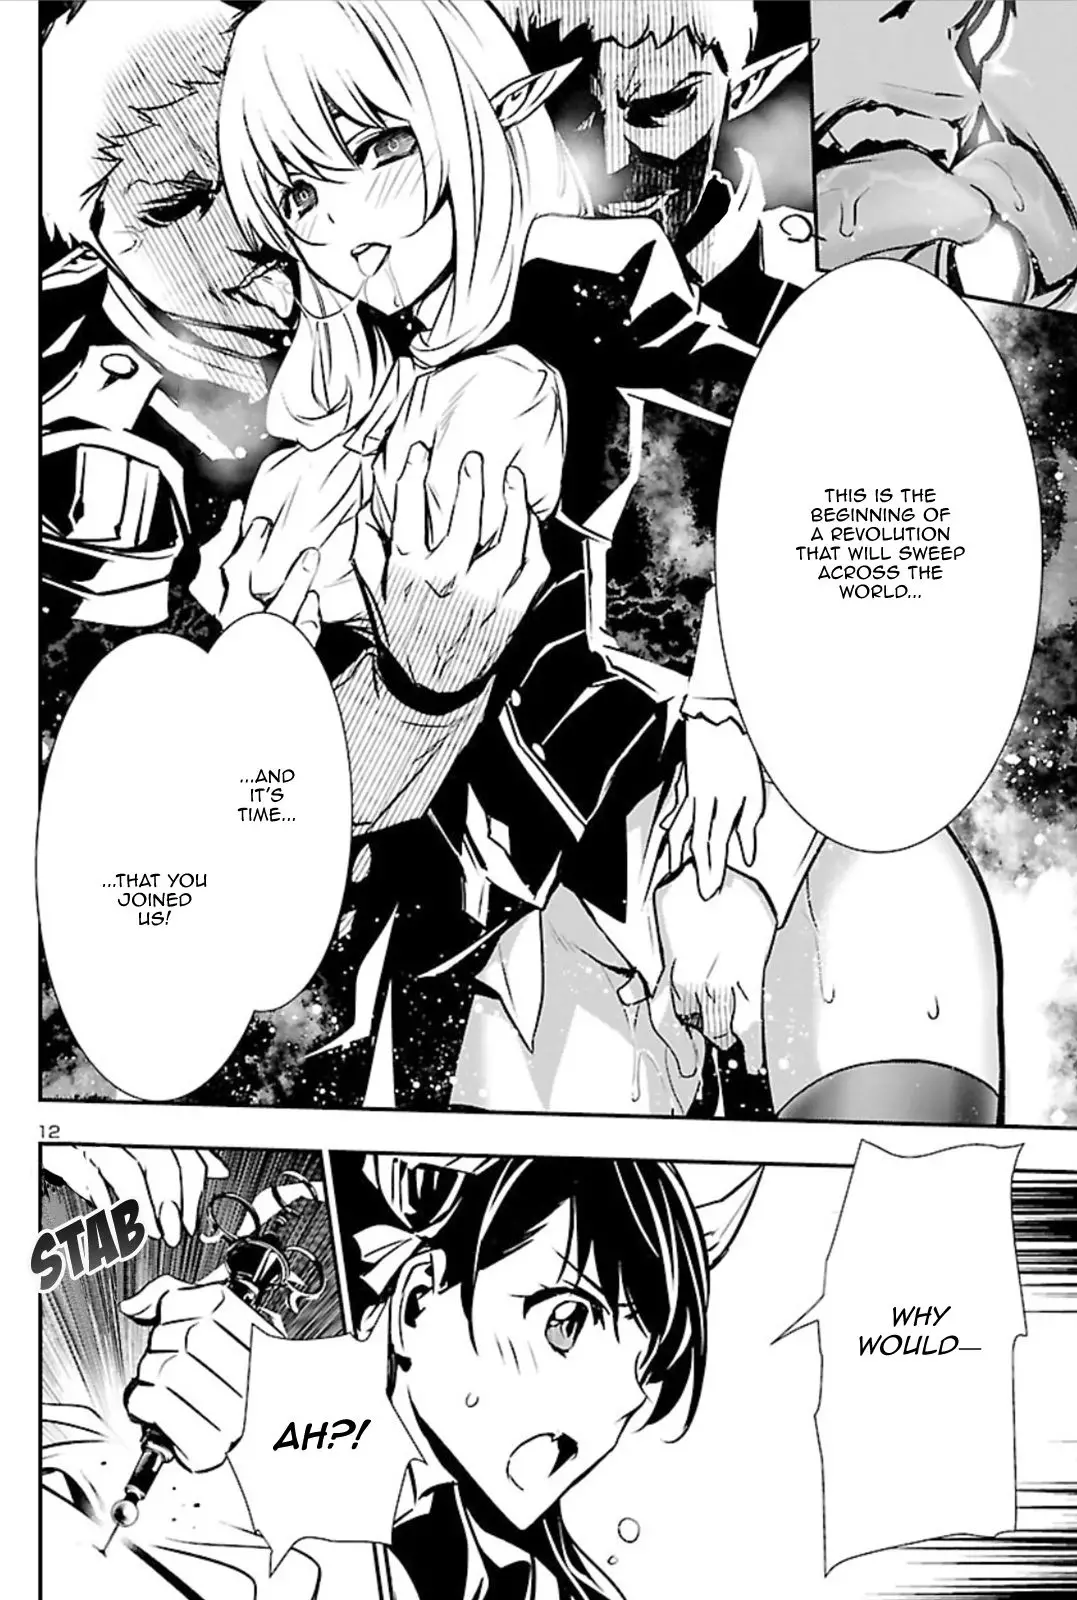 Shinju no Nectar - 41 page 11